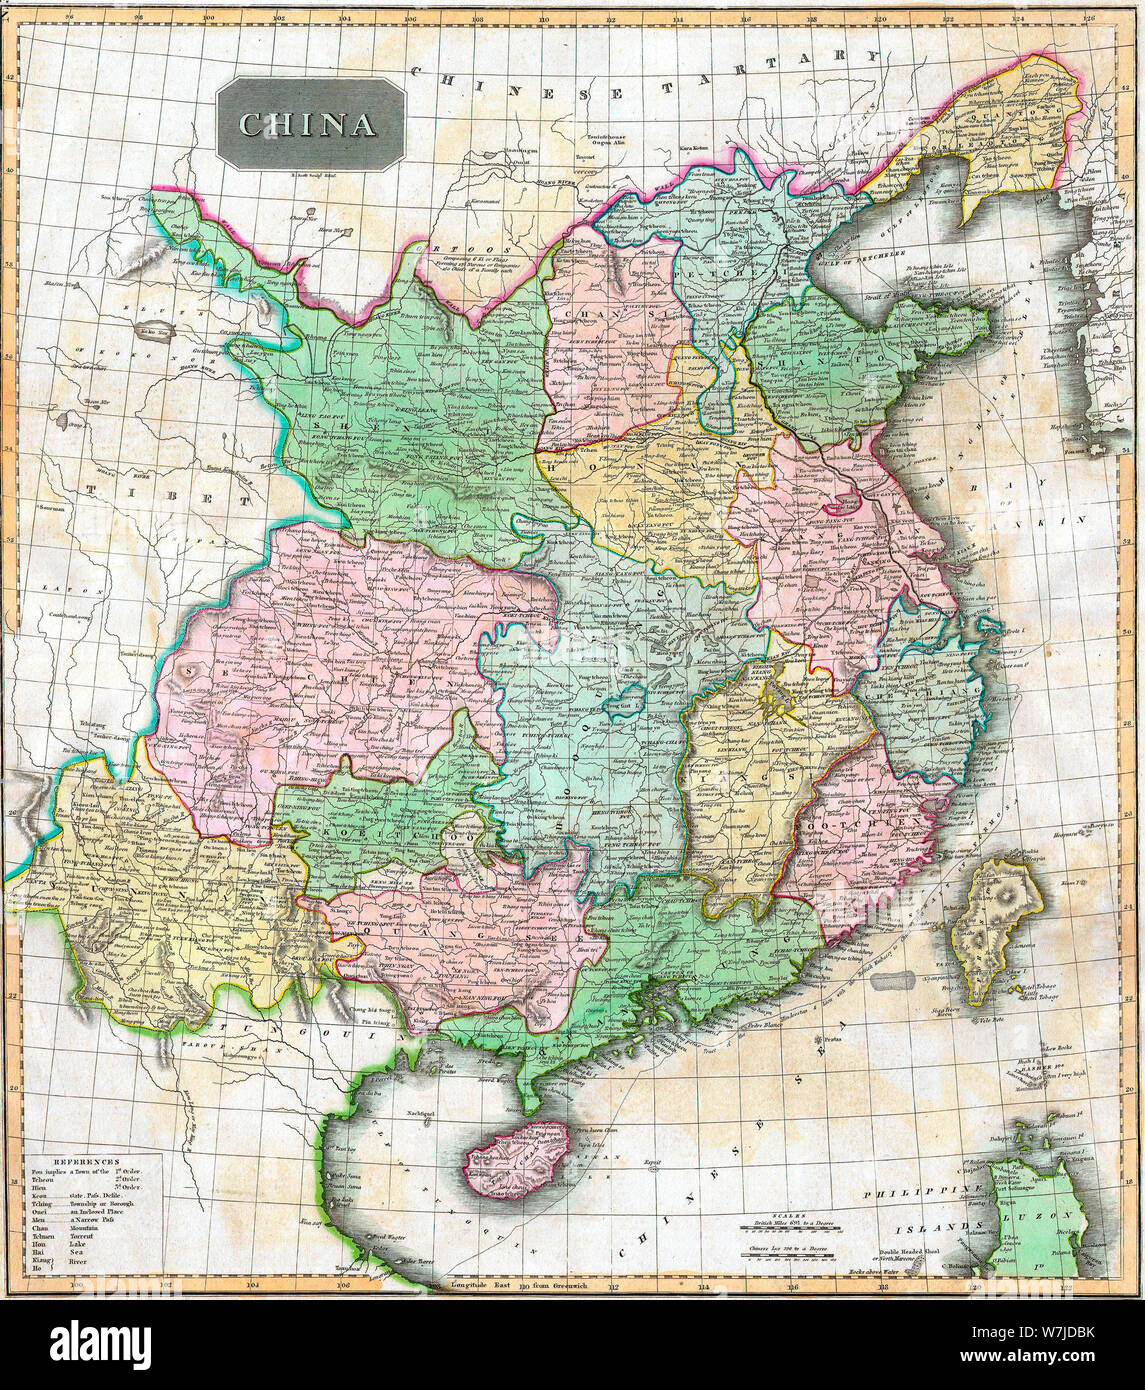 Carte de Chine - ce fascinant colorié à la main une carte de 1814 par John Thomson cartographe Édimbourg représente la Chine. Montre la Grande Muraille de Chine comme la limite nord. S'étend aussi loin à l'ouest que le plateau tibétain et aussi loin au sud que l'ancien royaume chinois/vietnamien du Tonkin ou Tungouin Banque D'Images